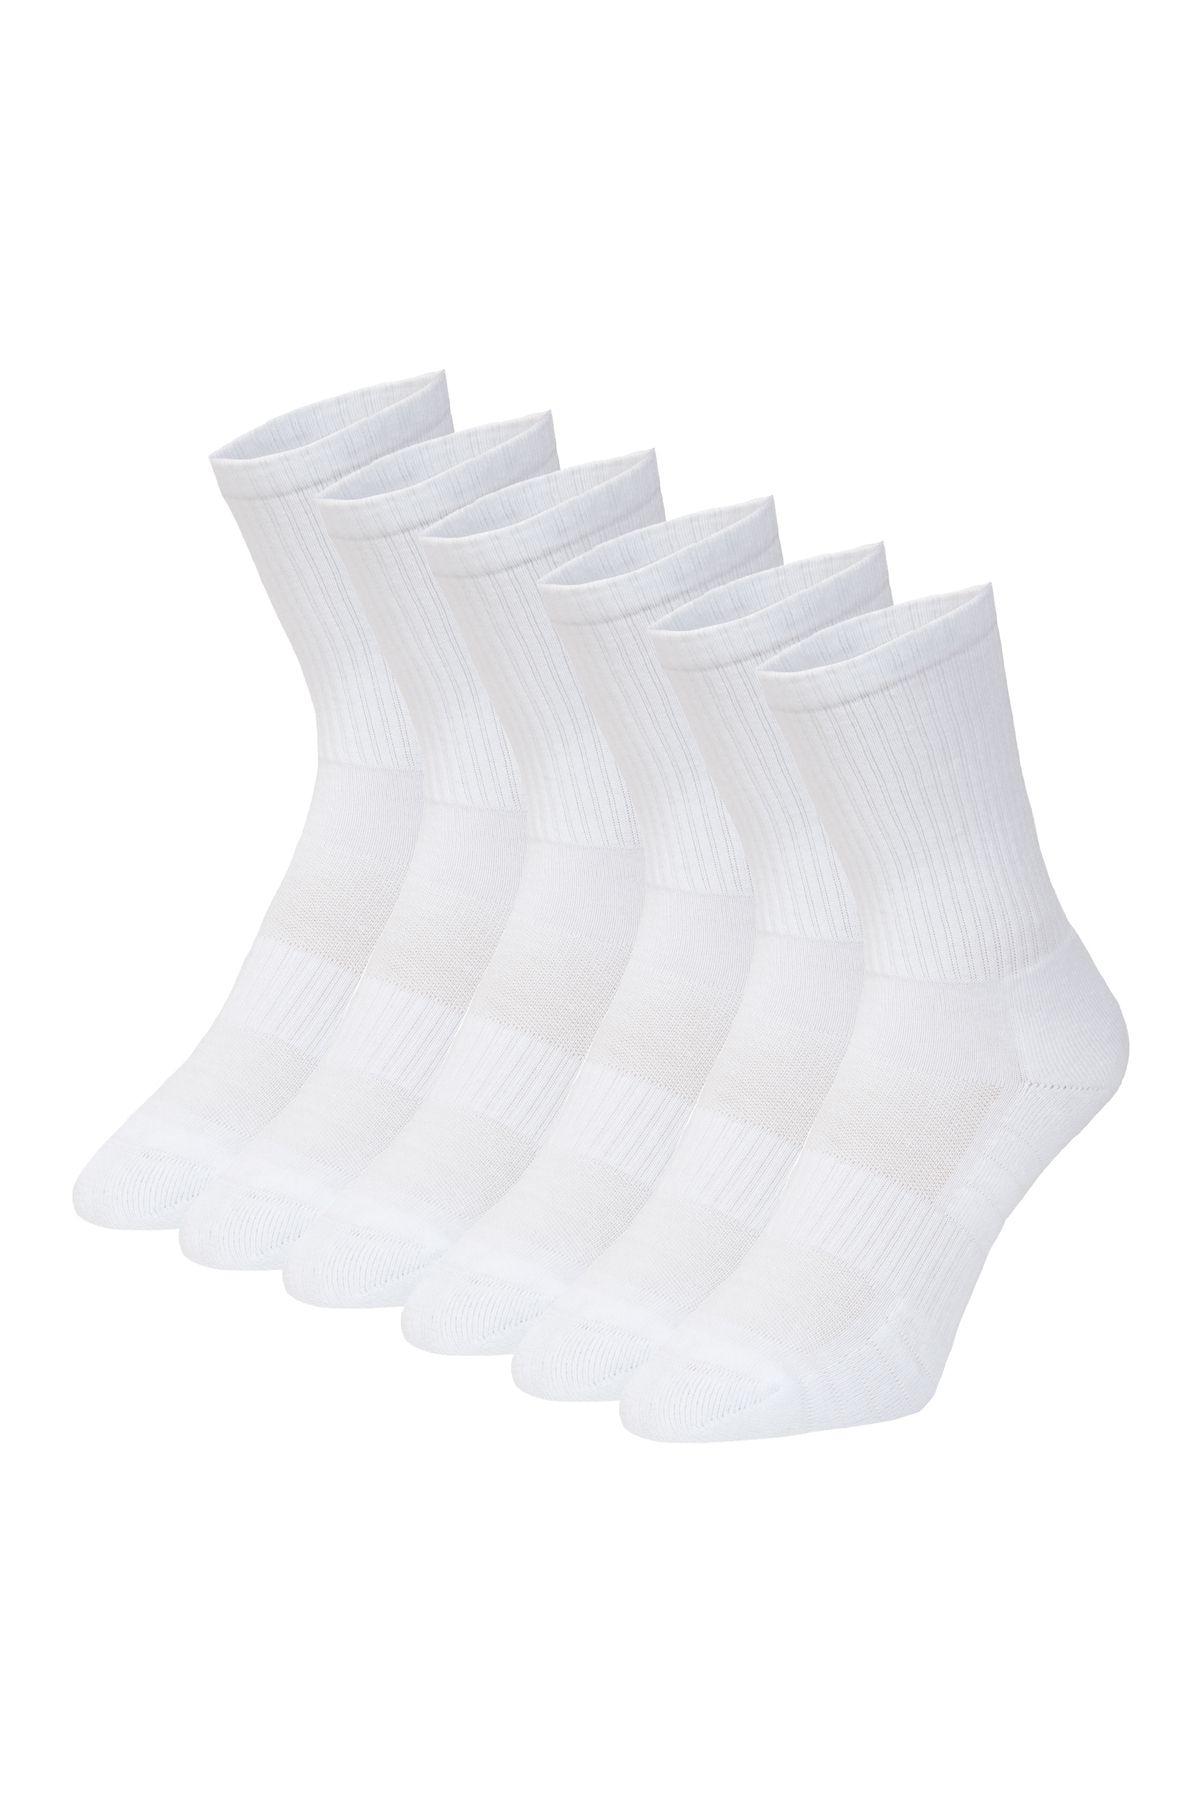 DuraSocks Erkek-kadın Spor Çorap, Antibakteriyel, Esnek, Dikişsiz Premium Çorap (beyaz, 6 Çift)